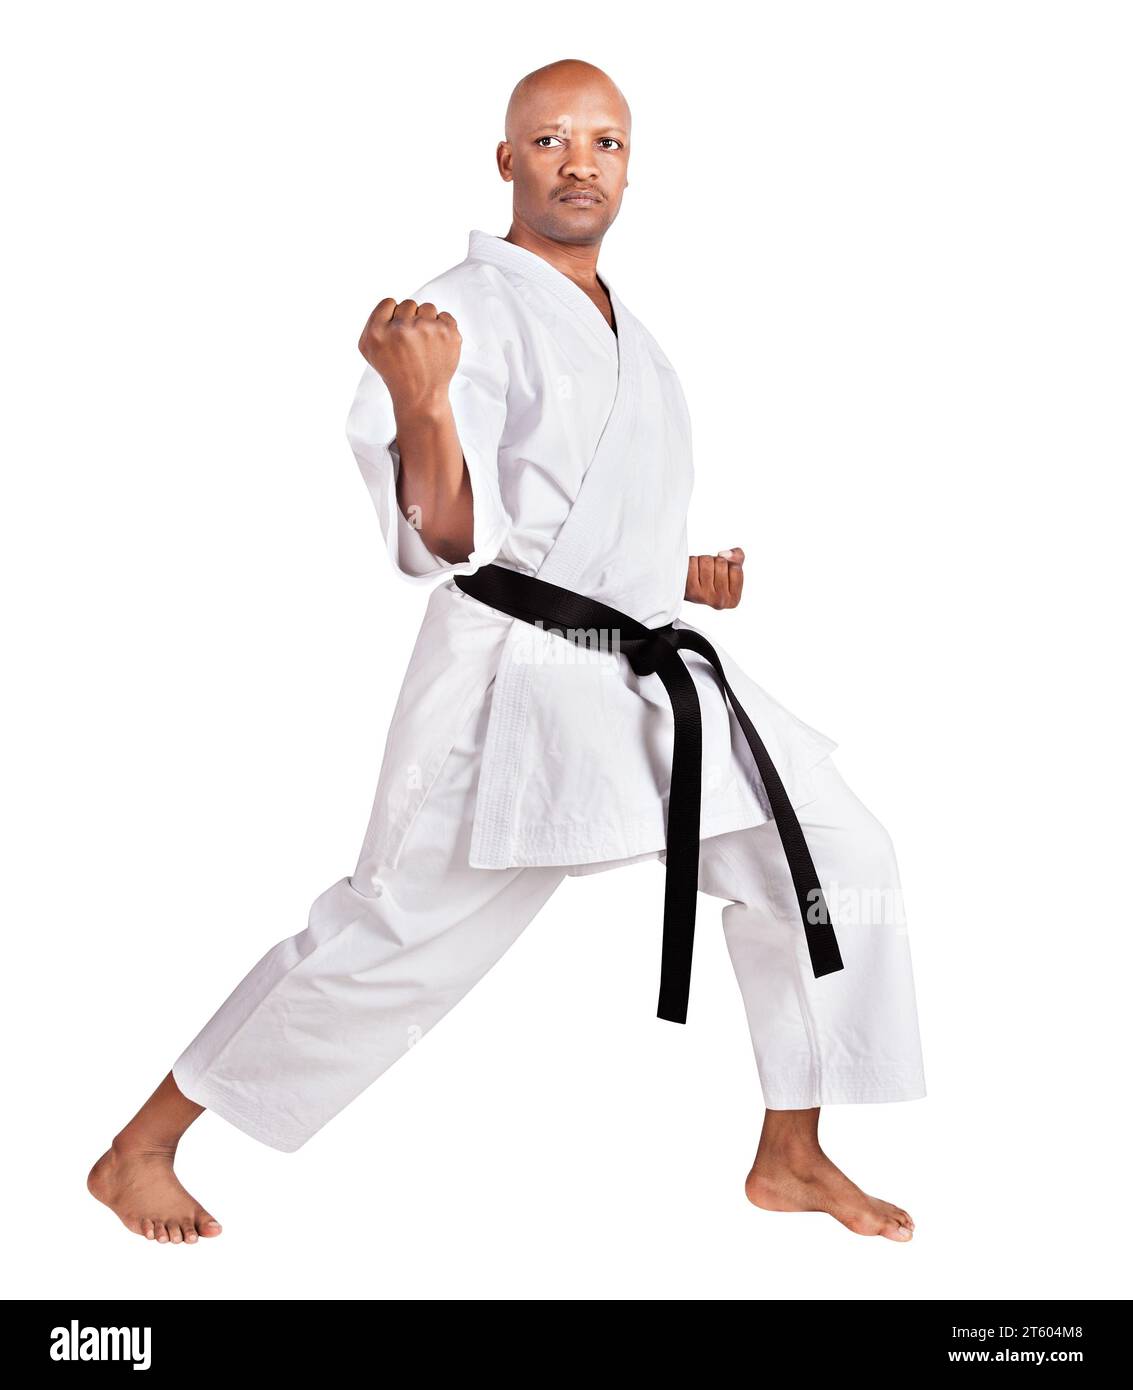 homme de karaté afro-américain dans une position kumite, exerçant son kata, en kimono blanc uniforme avec ceinture Banque D'Images